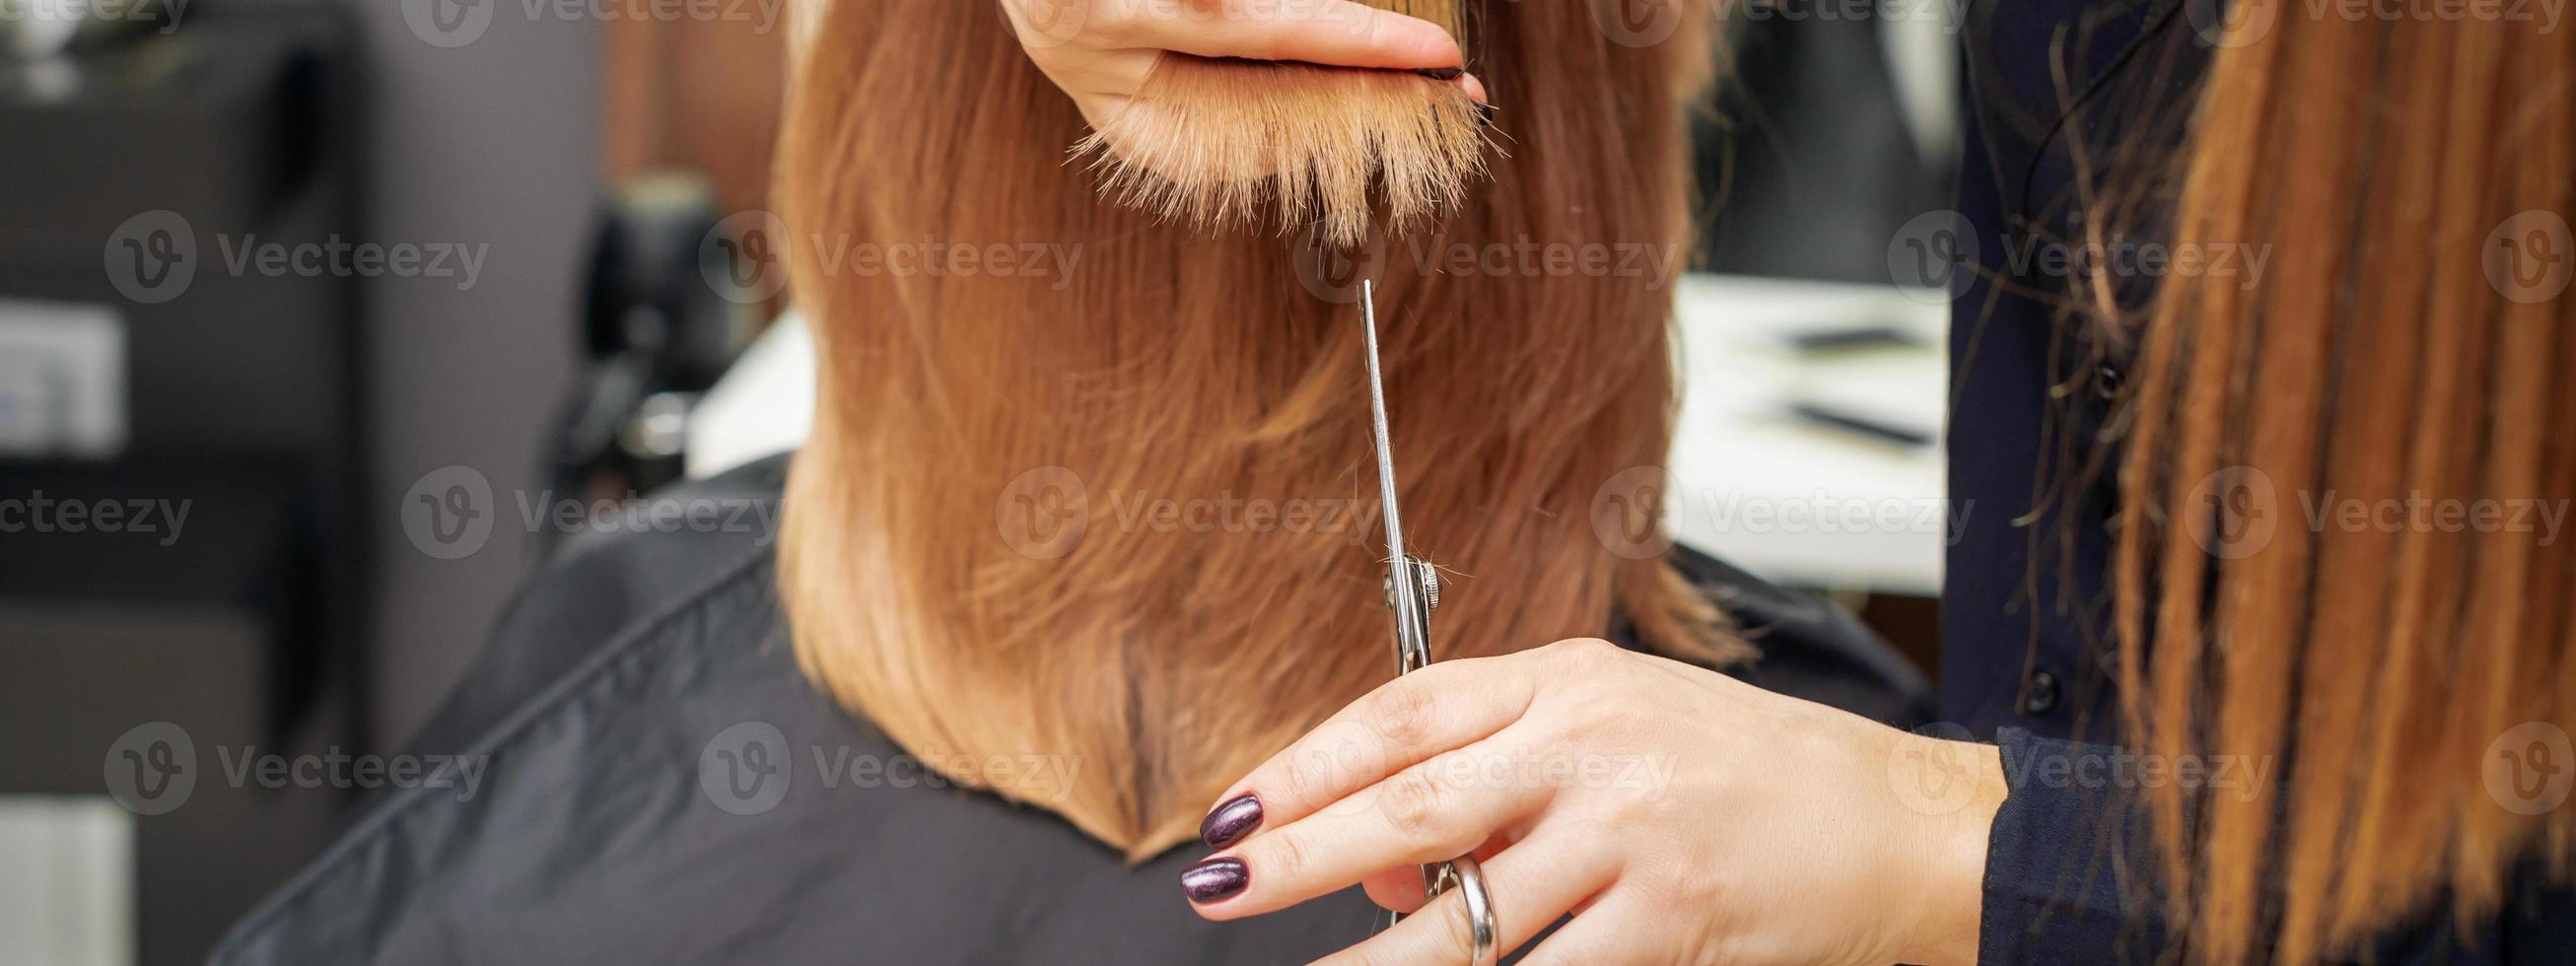 Friseur schneidet rote Haarspitzen foto